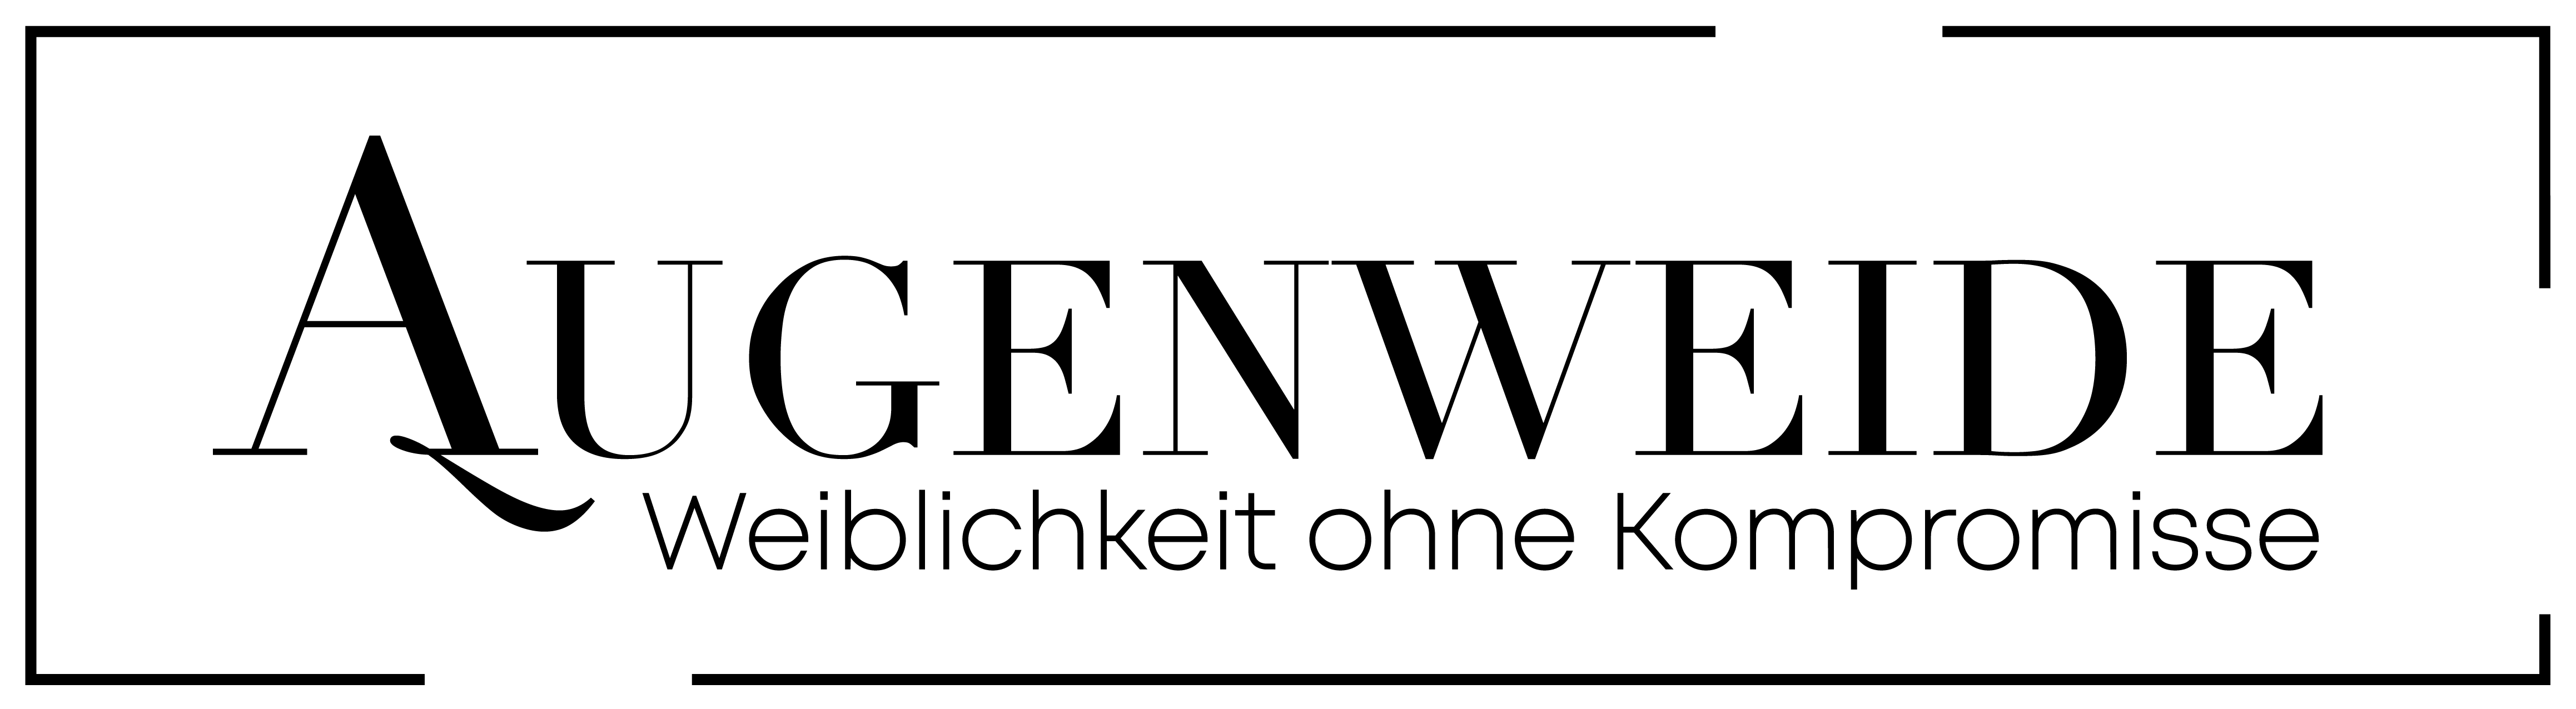 Augenweide Logo-01